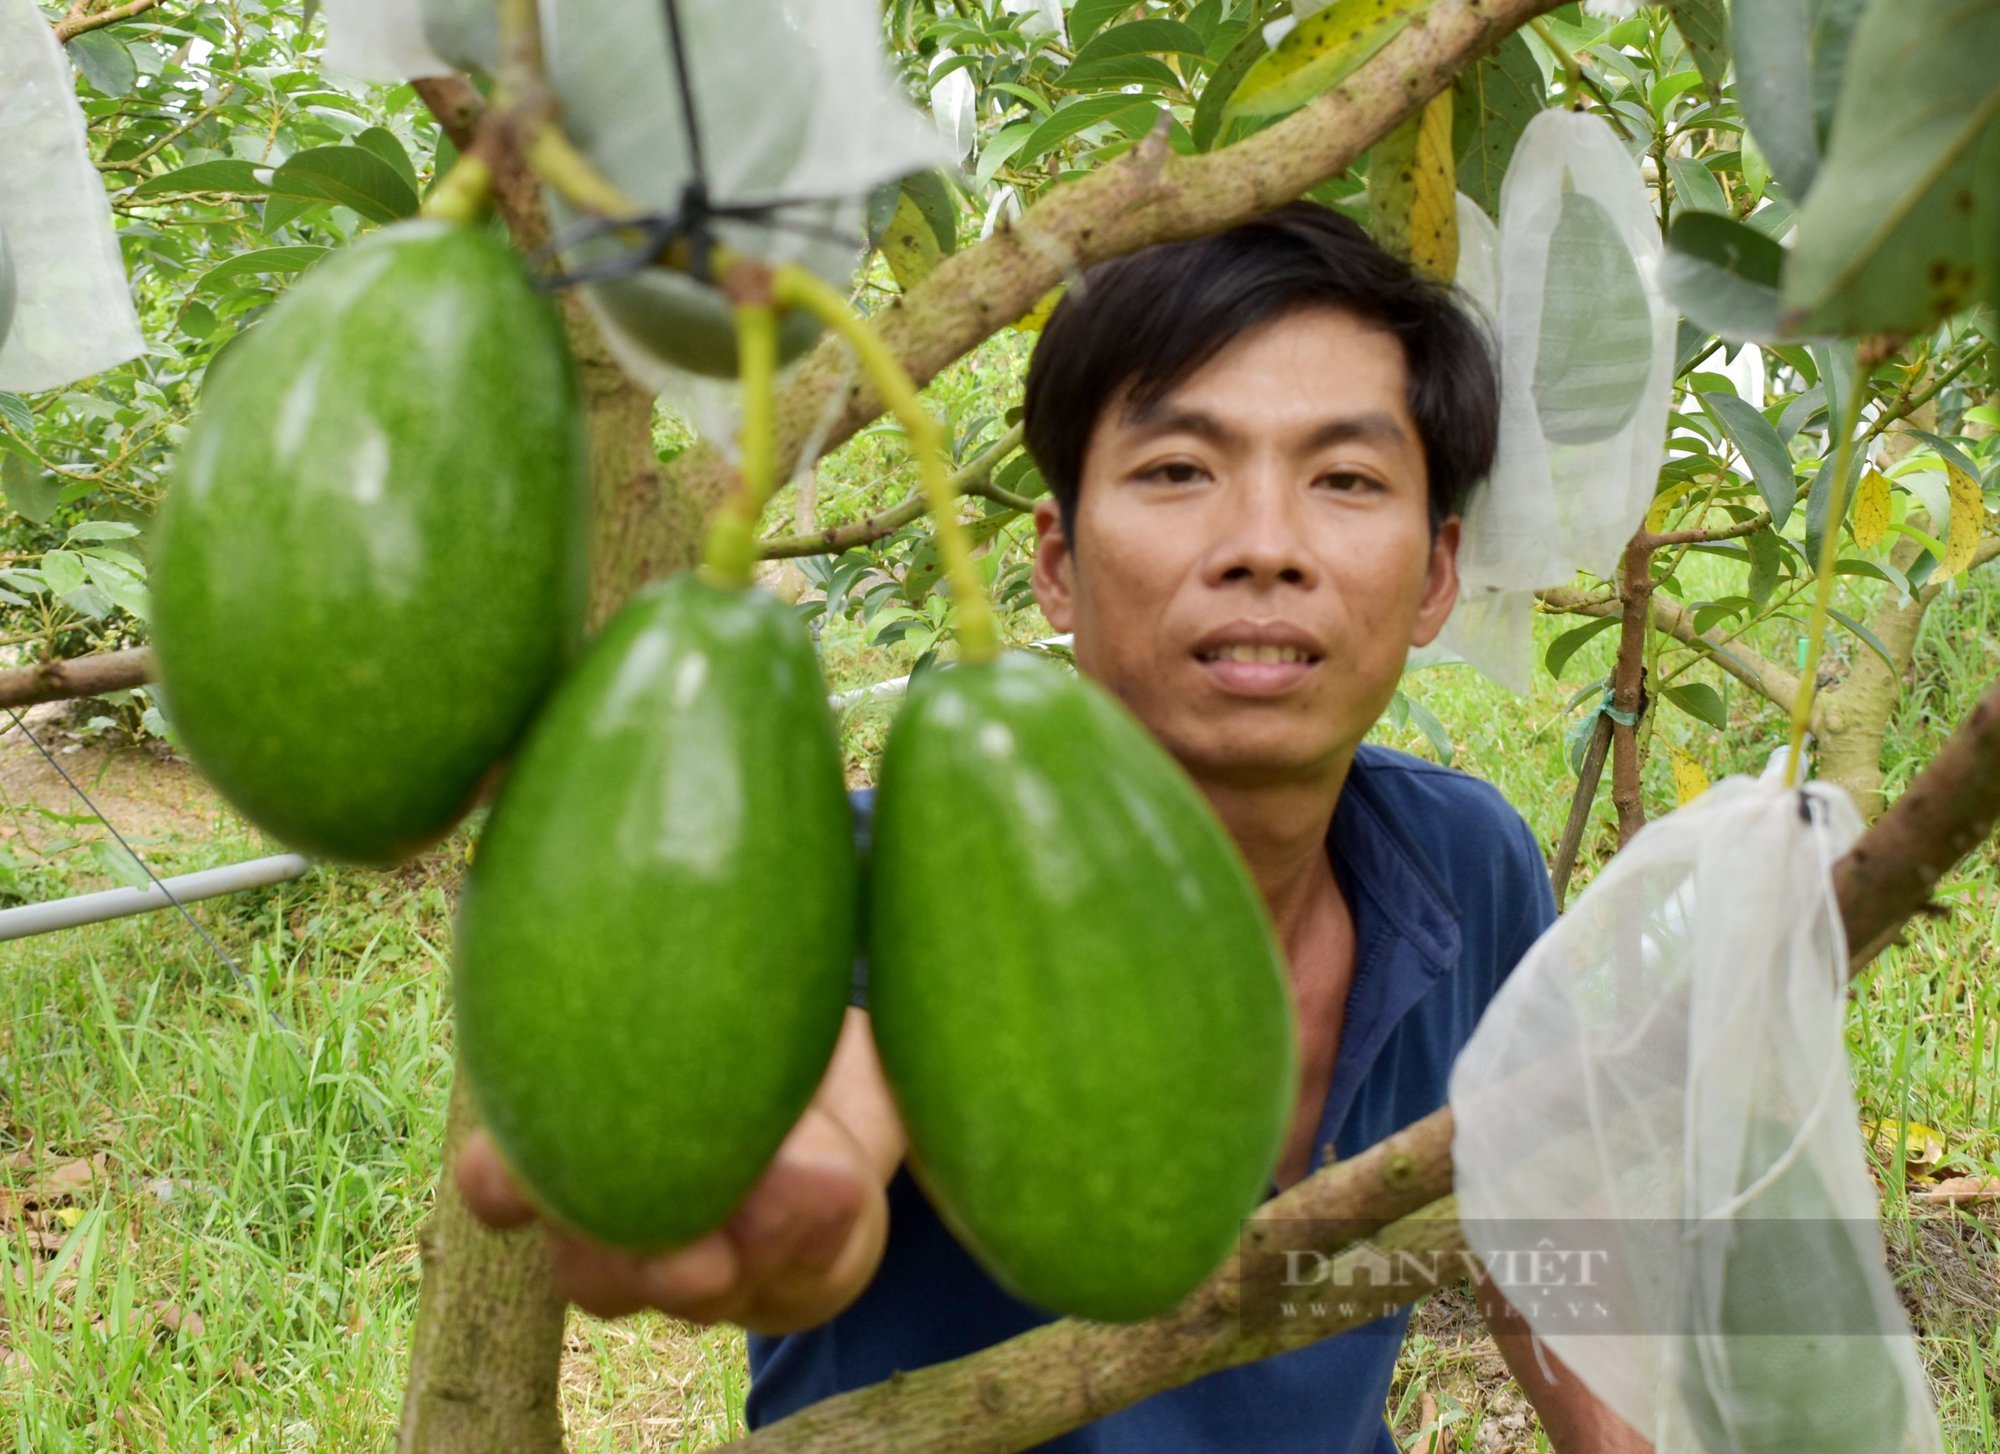 Loại trái cây có tác dụng thần thánh với sắc đẹp phụ nữ đang được toàn cầu săn lùng, Việt Nam trồng rất nhiều - Ảnh 1.